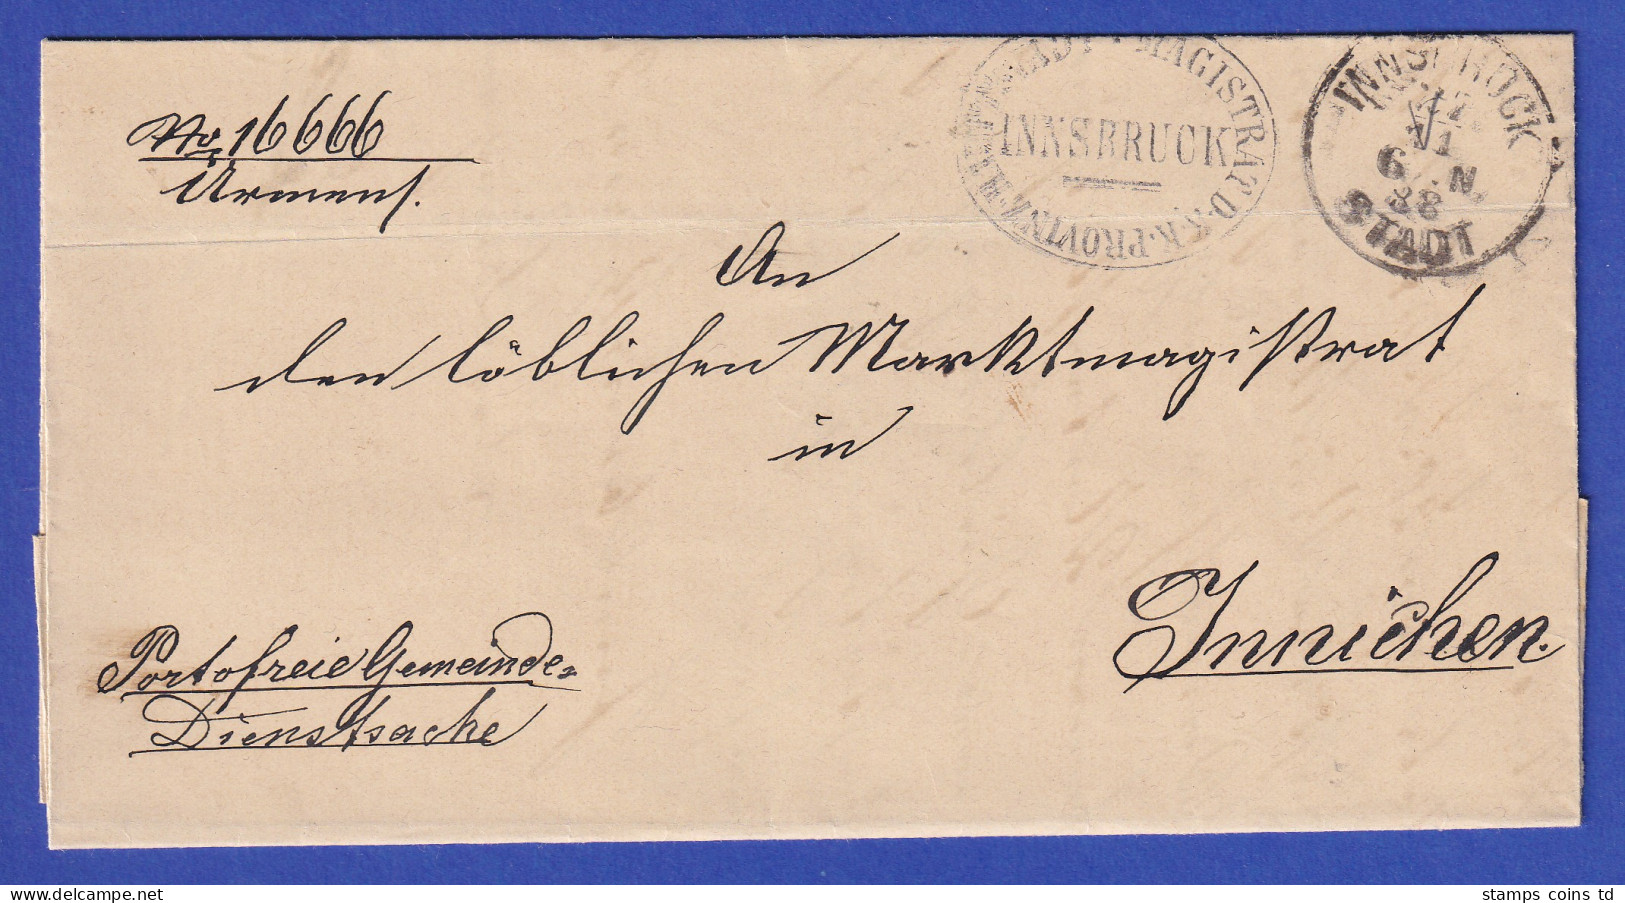 Österreich Dienstbrief Mit Rundstempel INNSBRUCK STADT 1888 - ...-1850 Voorfilatelie